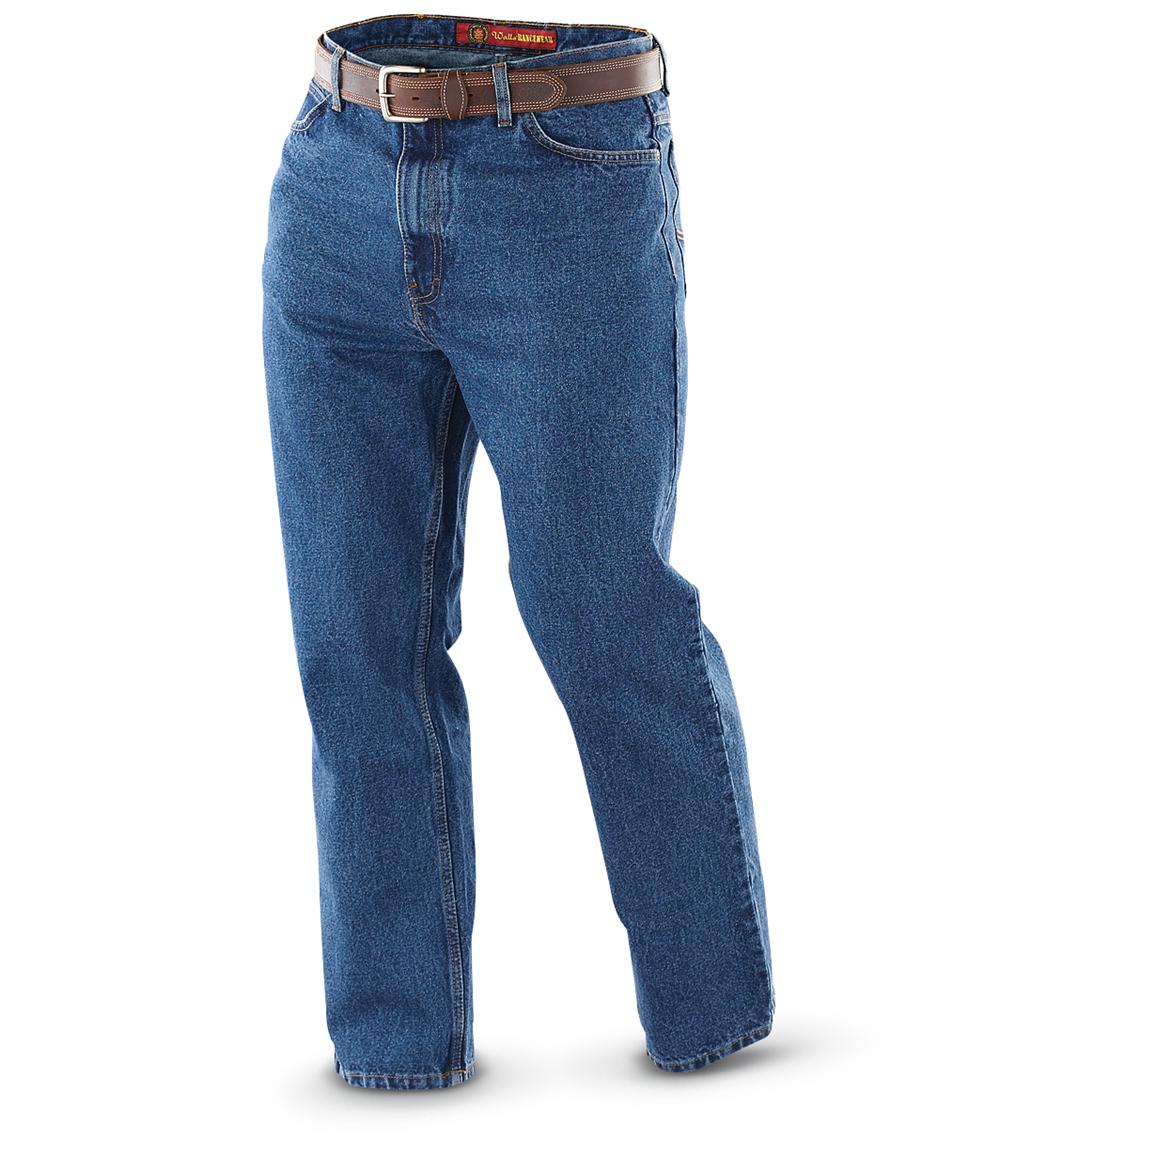 Walls® Workwear Flannel - lined Jeans, Denim, 30